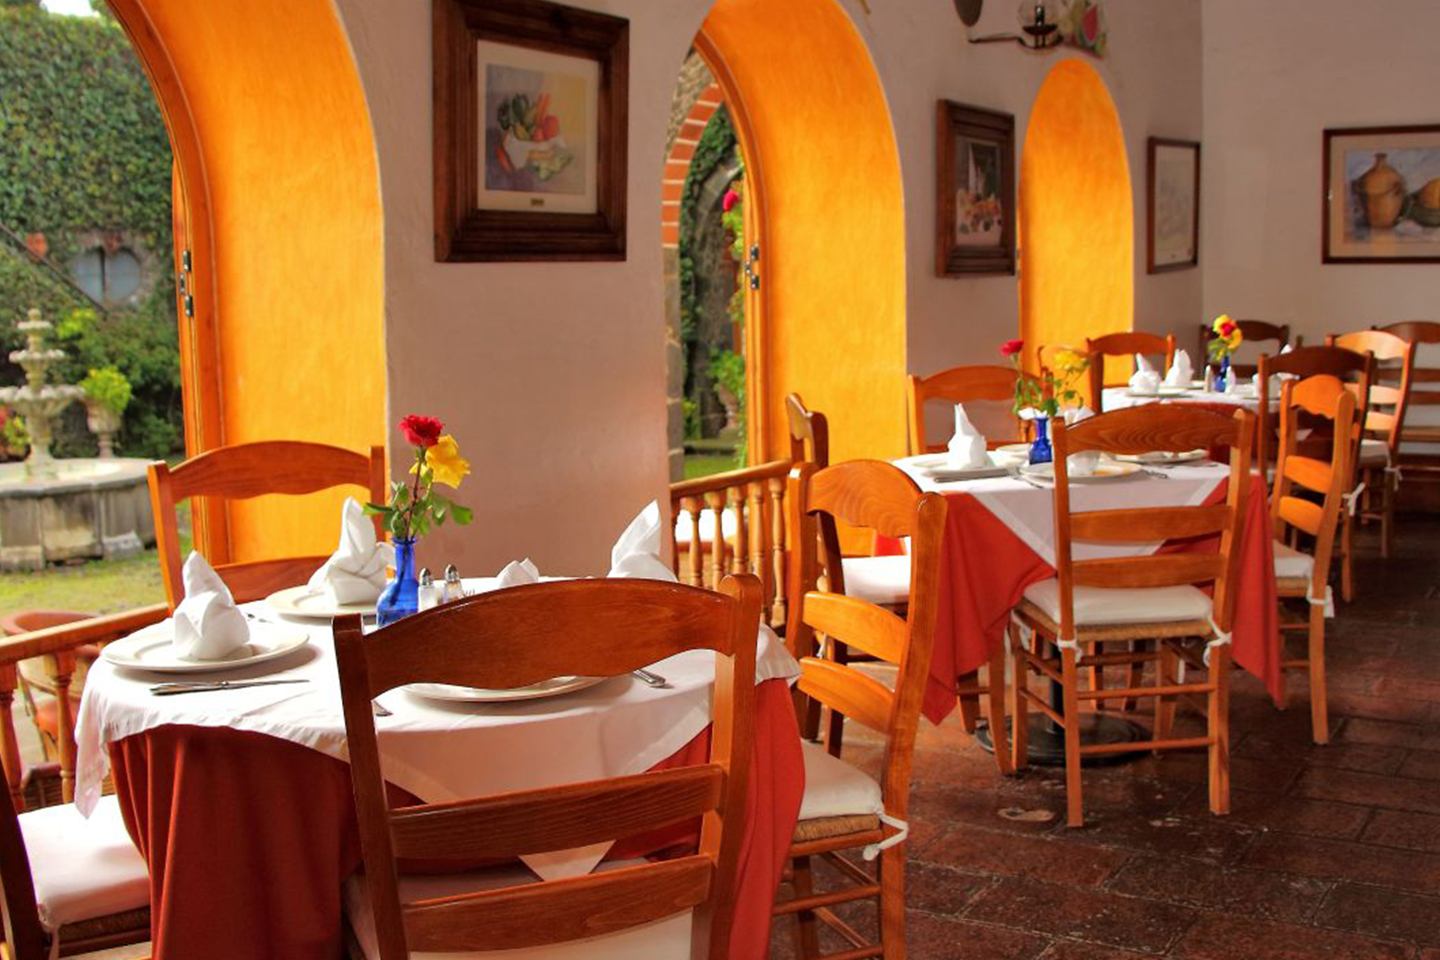 Los 10 mejores restaurantes en Tepoztlán que tienes que conocer